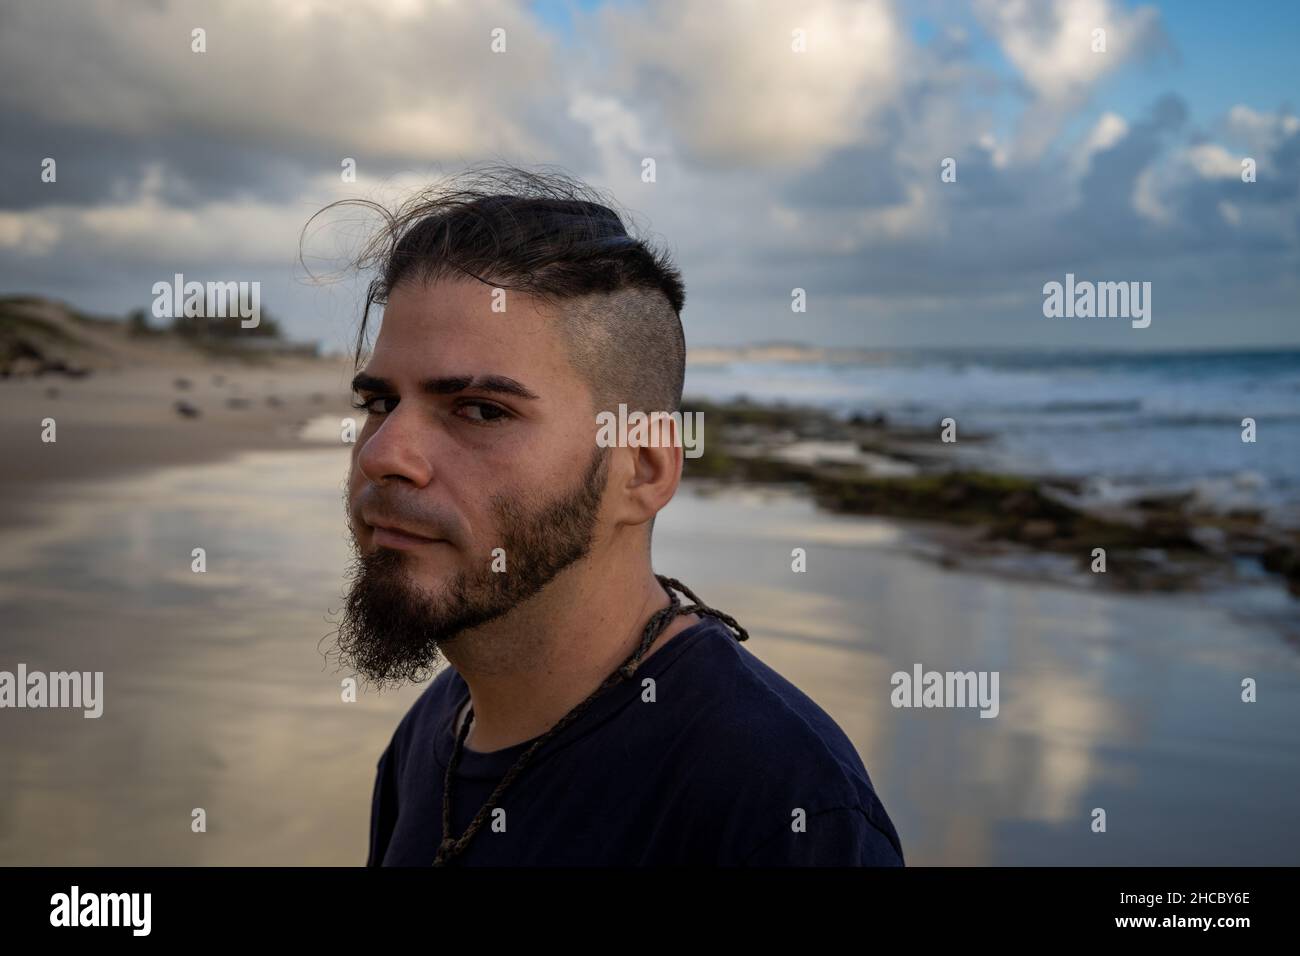 Homme blanc entre 25 et 30 ans avec une coupe de cheveux moderne et une attitude suspecte au bord de la mer. Banque D'Images